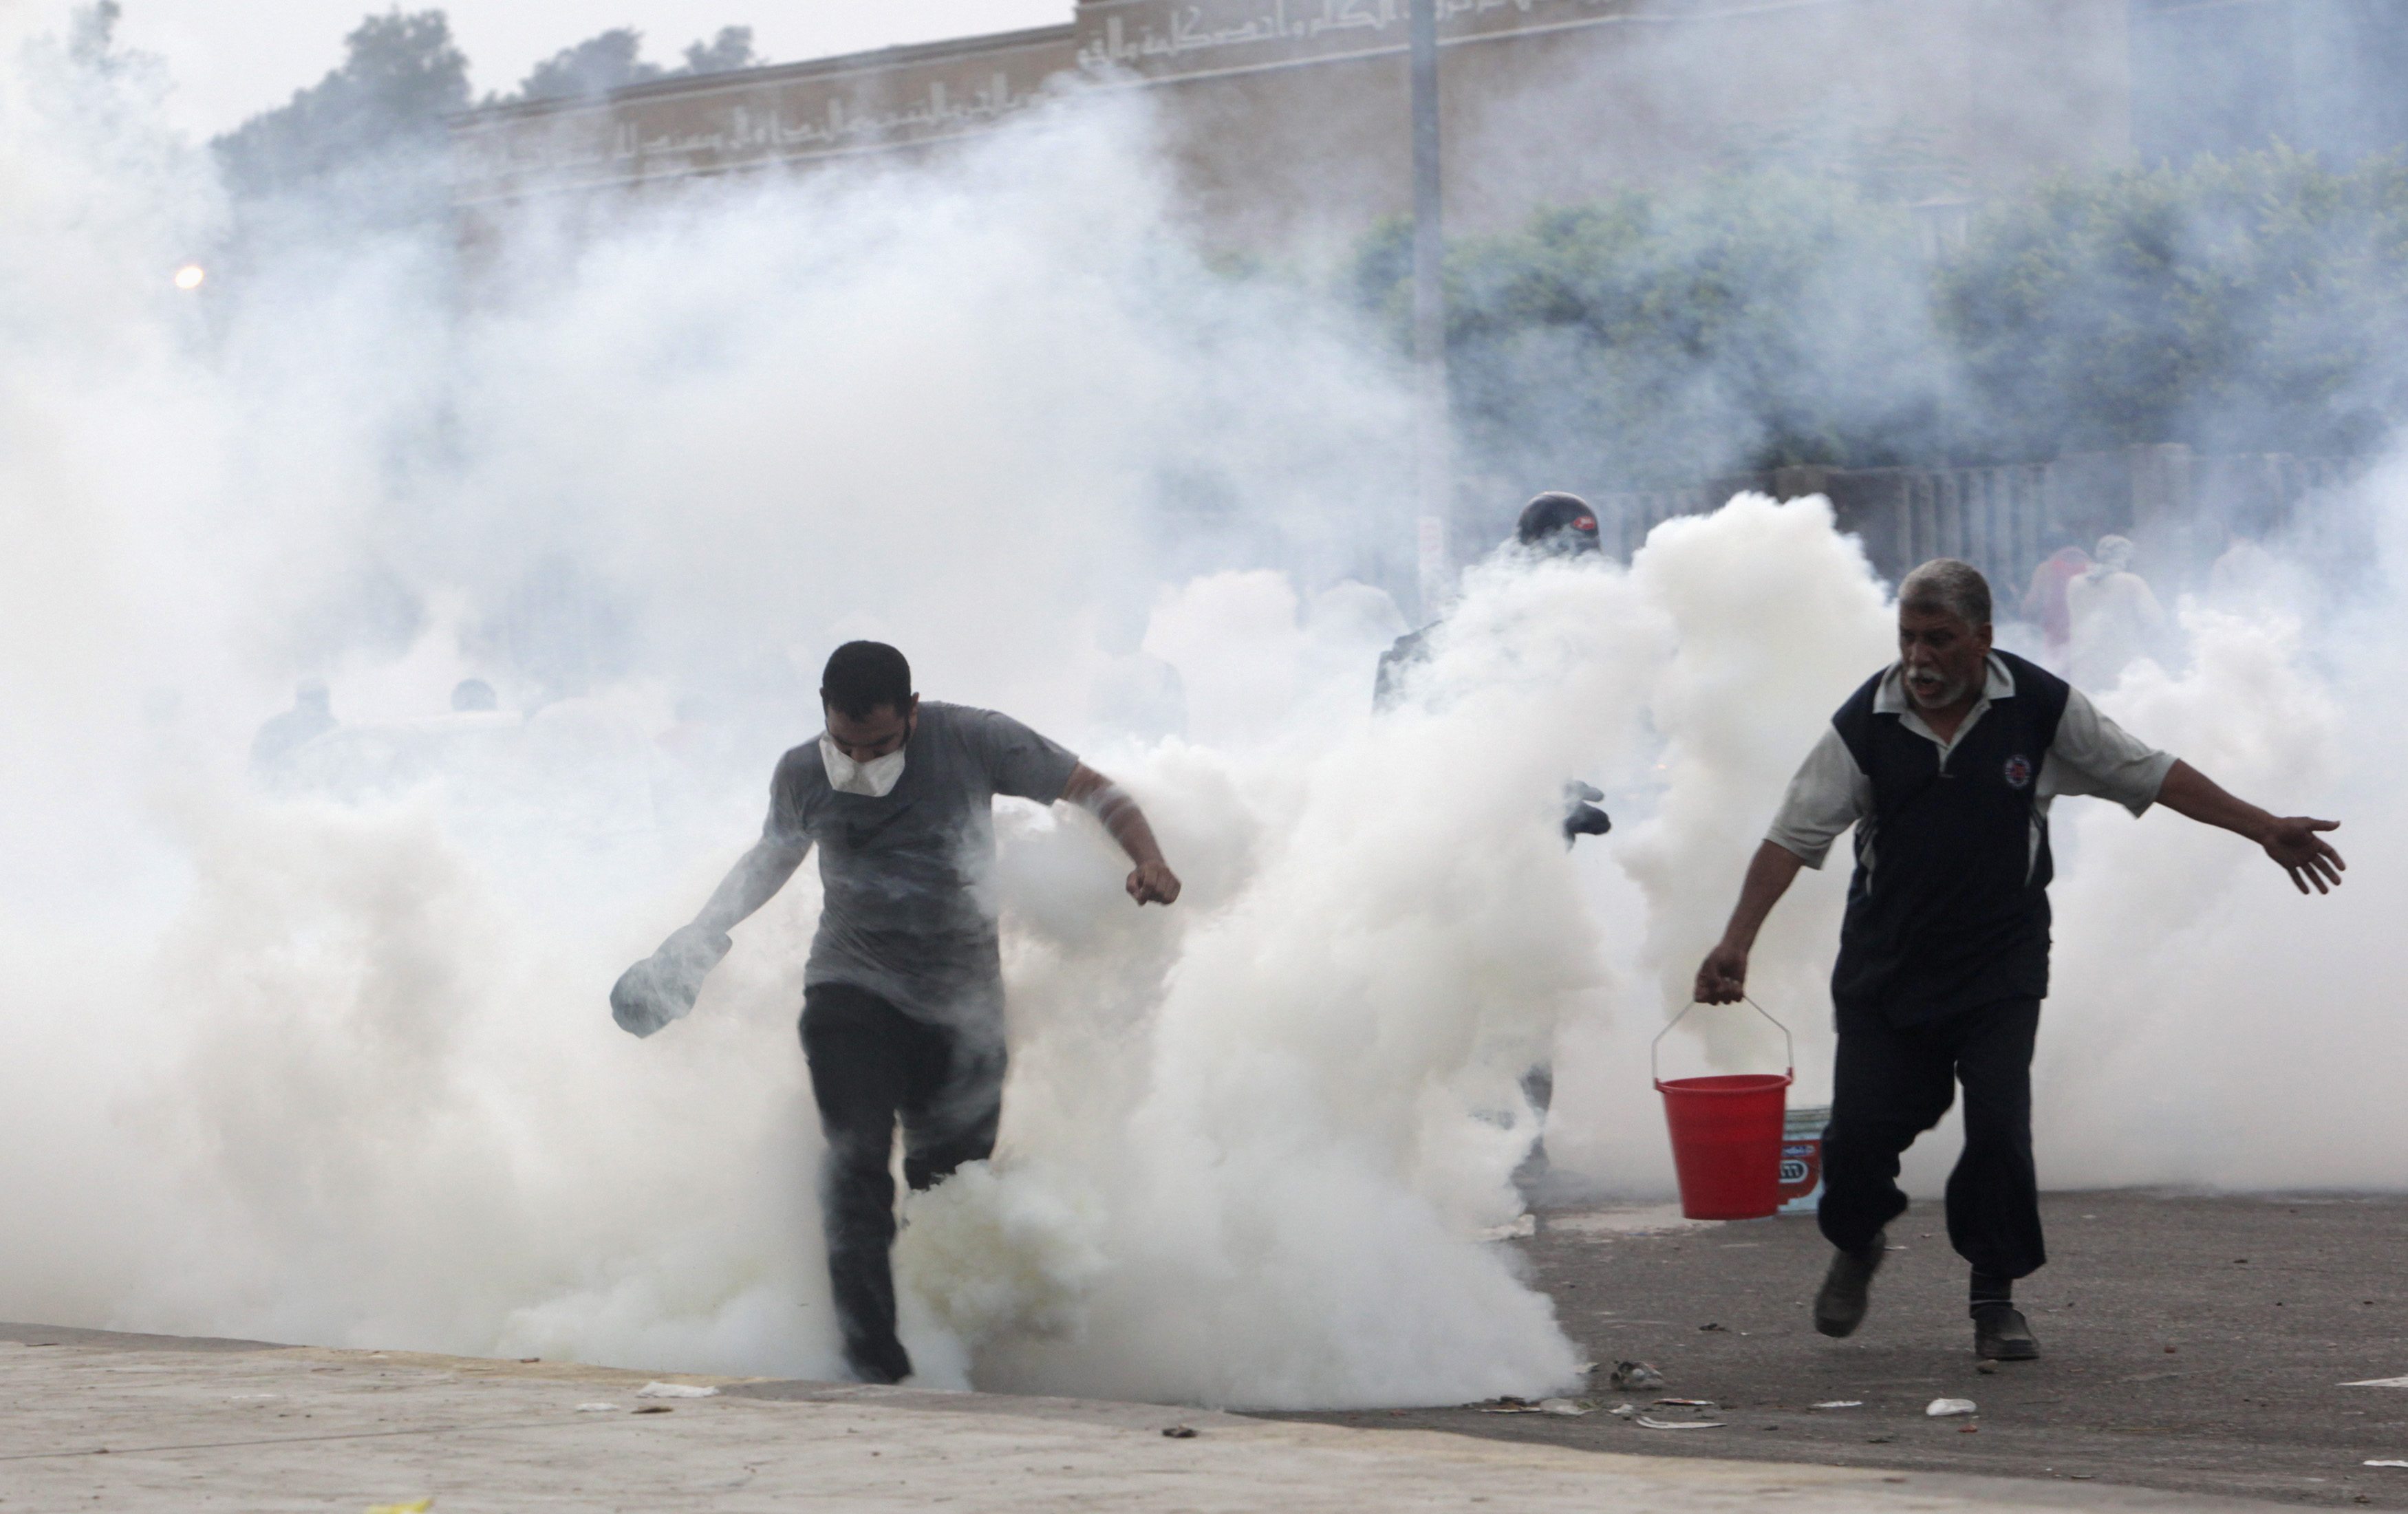 Πυροβολισμοί και δακρυγόνα στο... ψαχνό! ΦΩΤΟΓΡΑΦΙΑ REUTERS